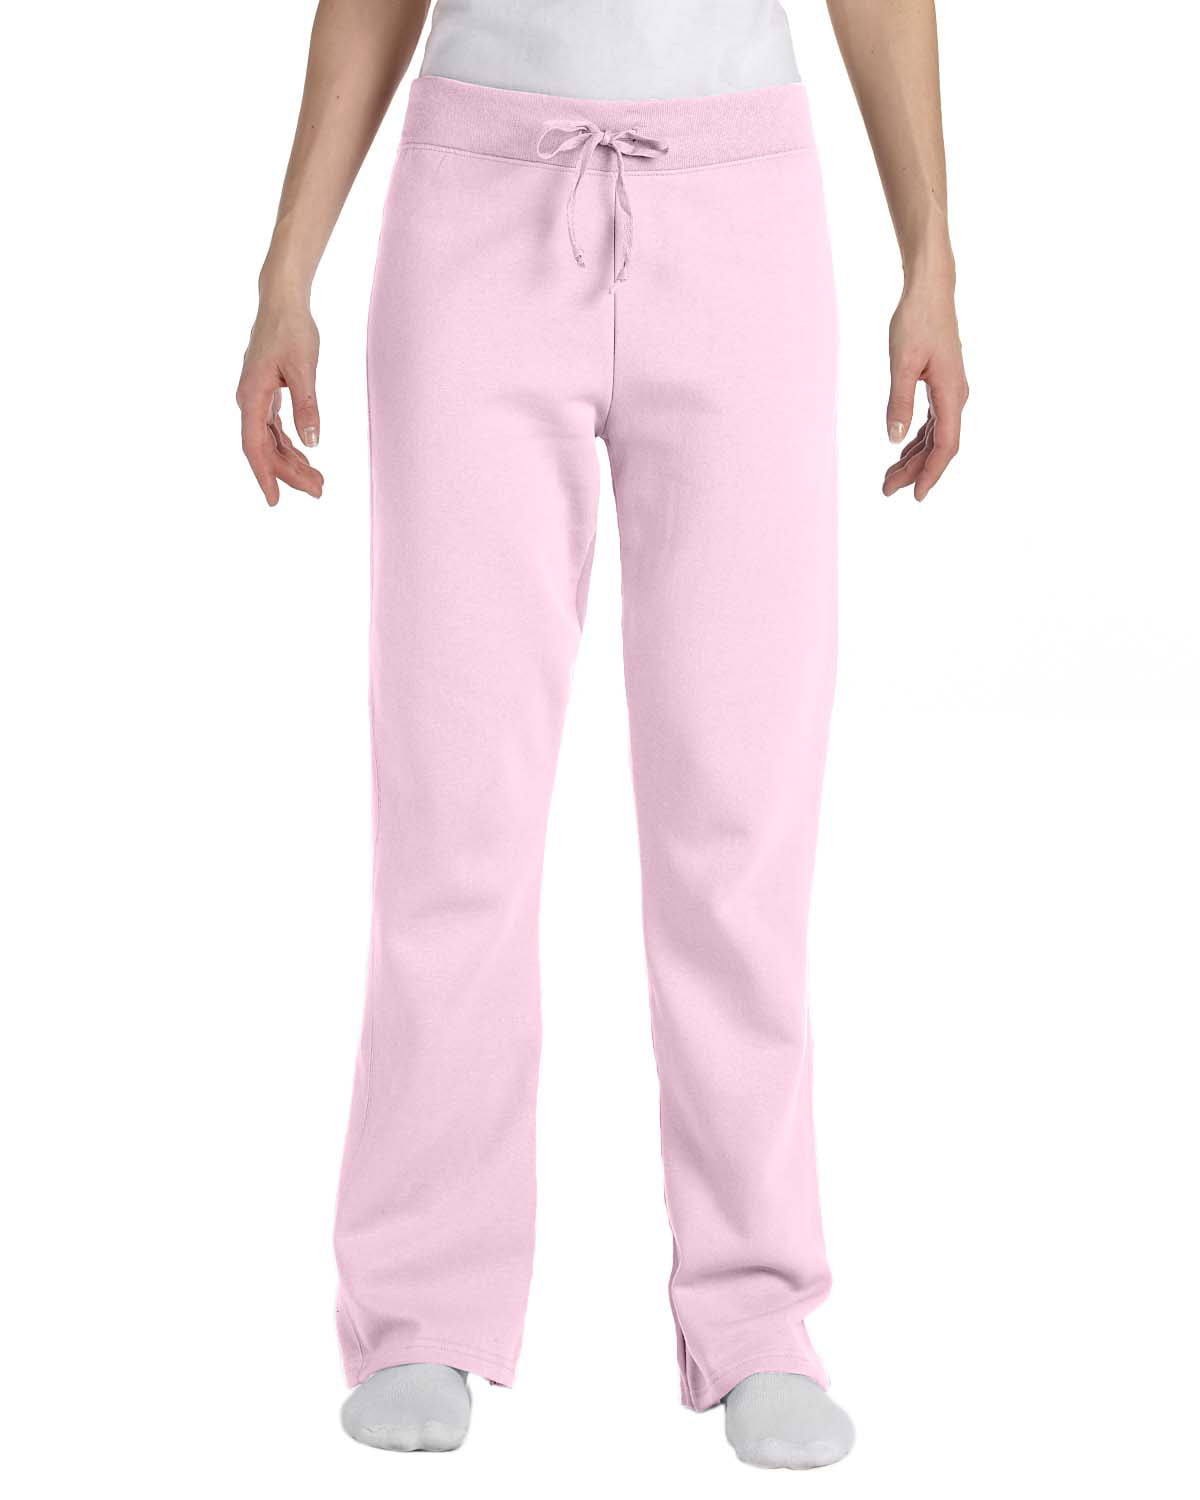 Hanes - W550 Ecosmart Cotton-Rich Women Drawstring Sweatpants Size 2